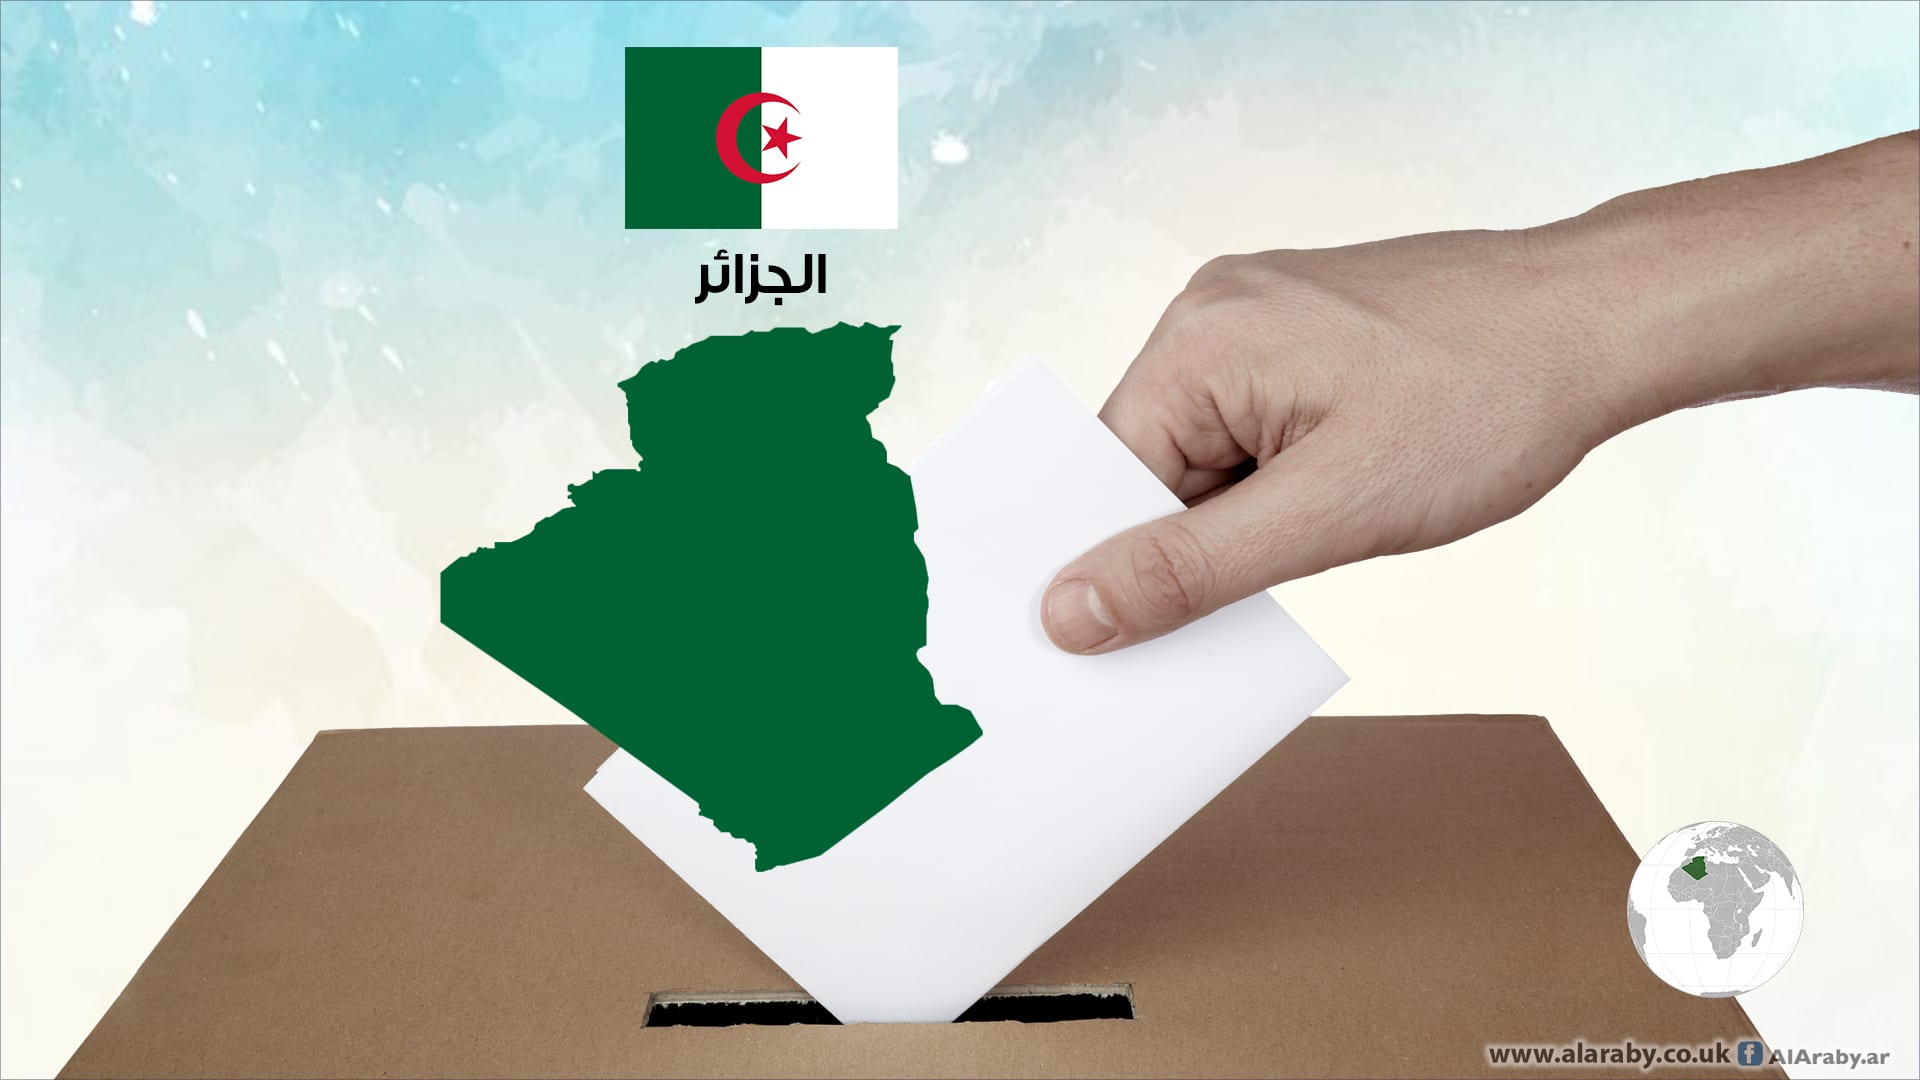 إنتخابات الجزائر الجديدة الأقل مشاركة و نزاهة